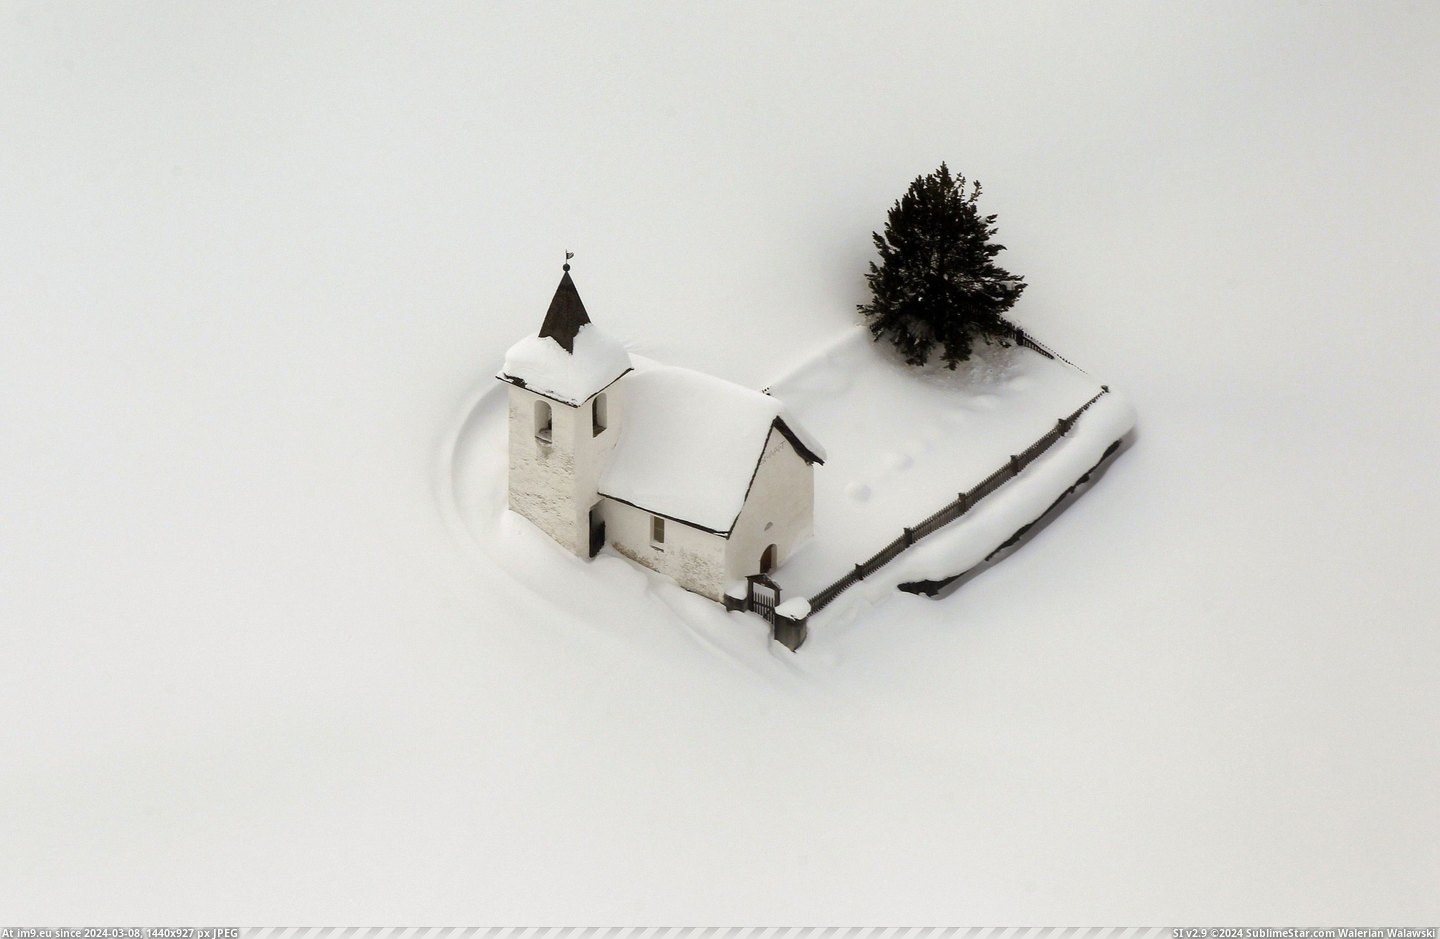 #Snow #Church #Jenisberg #Switzerland #Surrounded [Pics] A little church in Jenisberg, Switzerland, surrounded by snow. Pic. (Obraz z album My r/PICS favs))